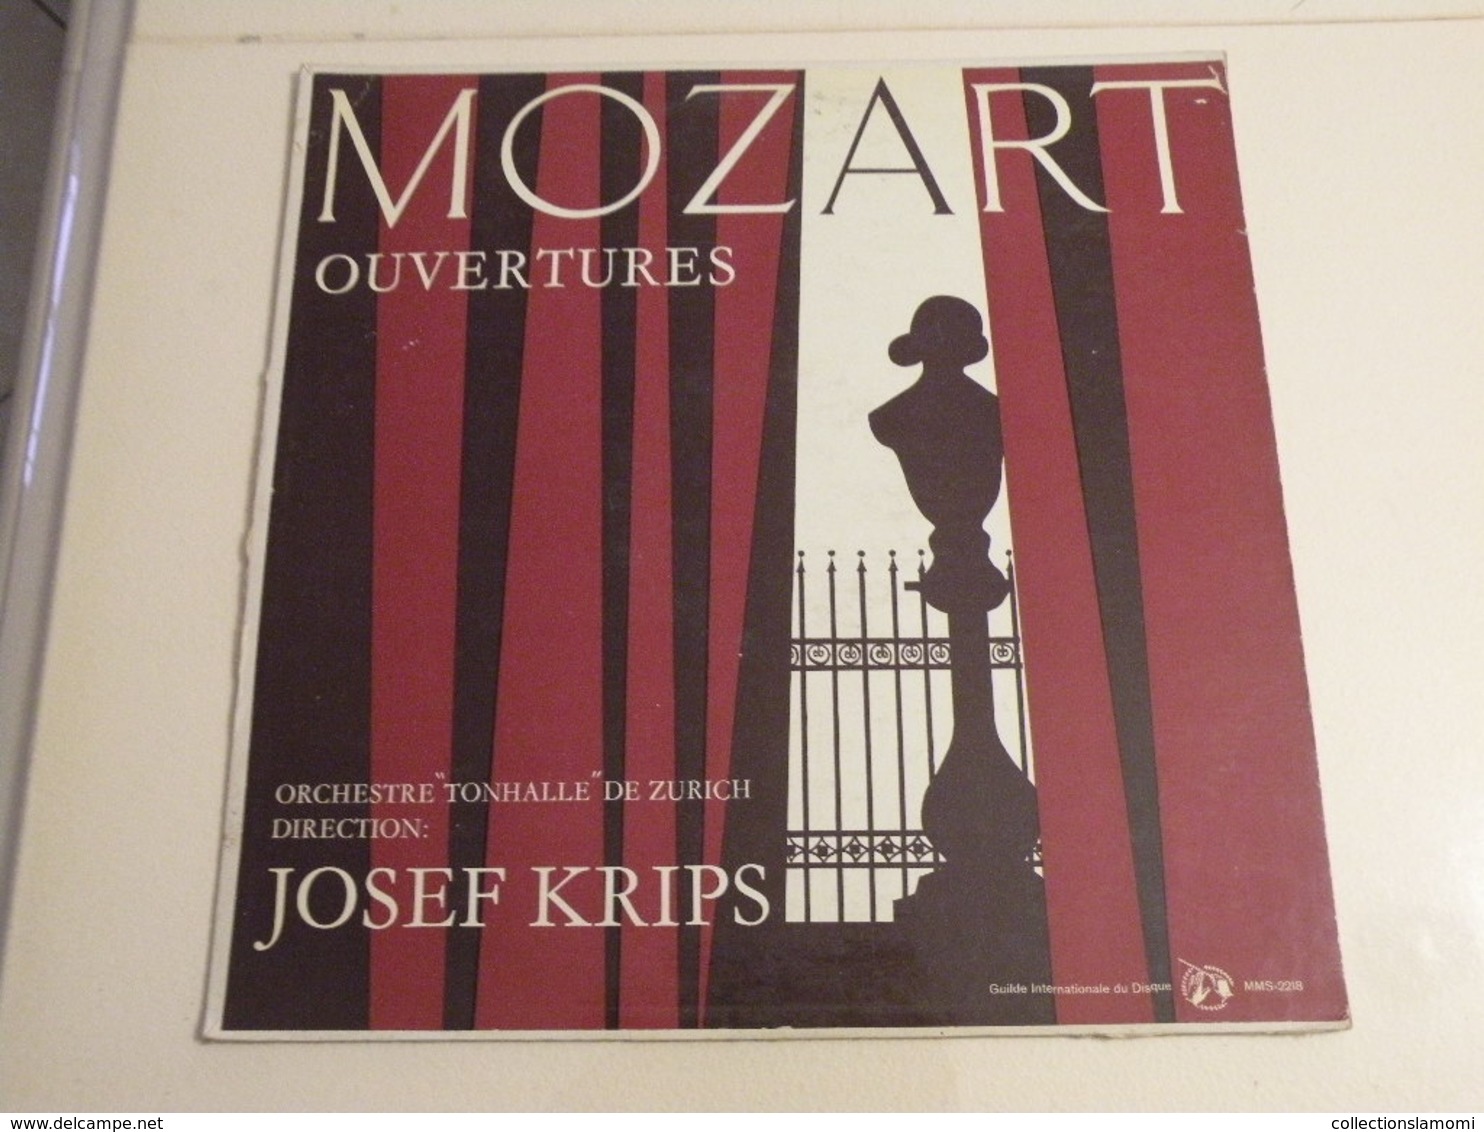 Mozart, Ouvertures Josef Krips - (Titres Sur Photos) - Vinyle 33 T LP - Classique